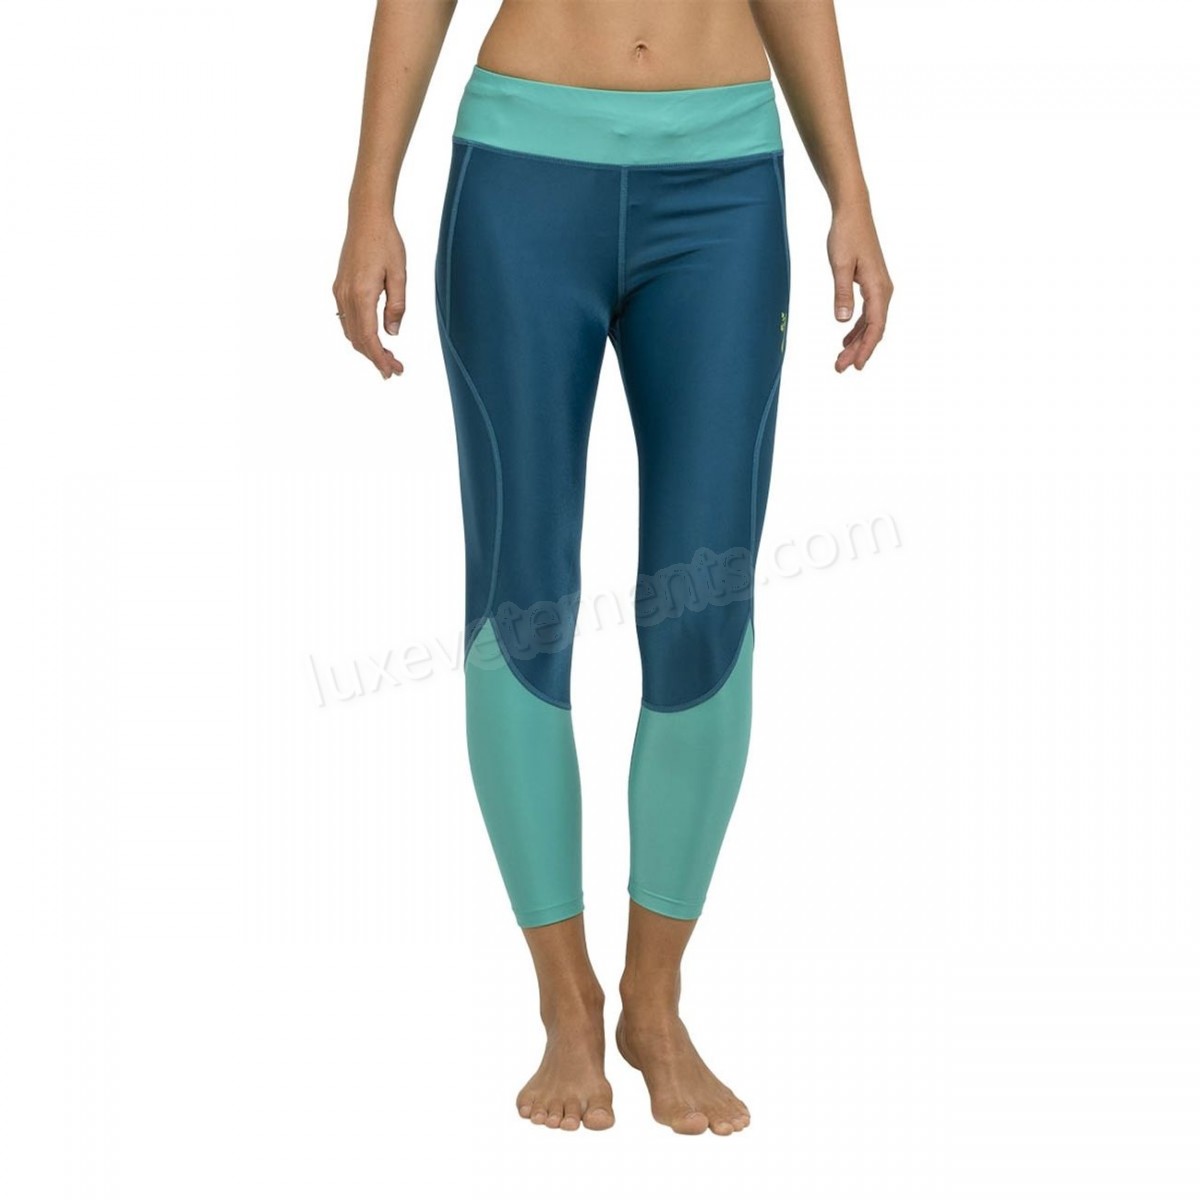 Oxbow-Yoga femme OXBOW Legging RITA Vente en ligne - -0